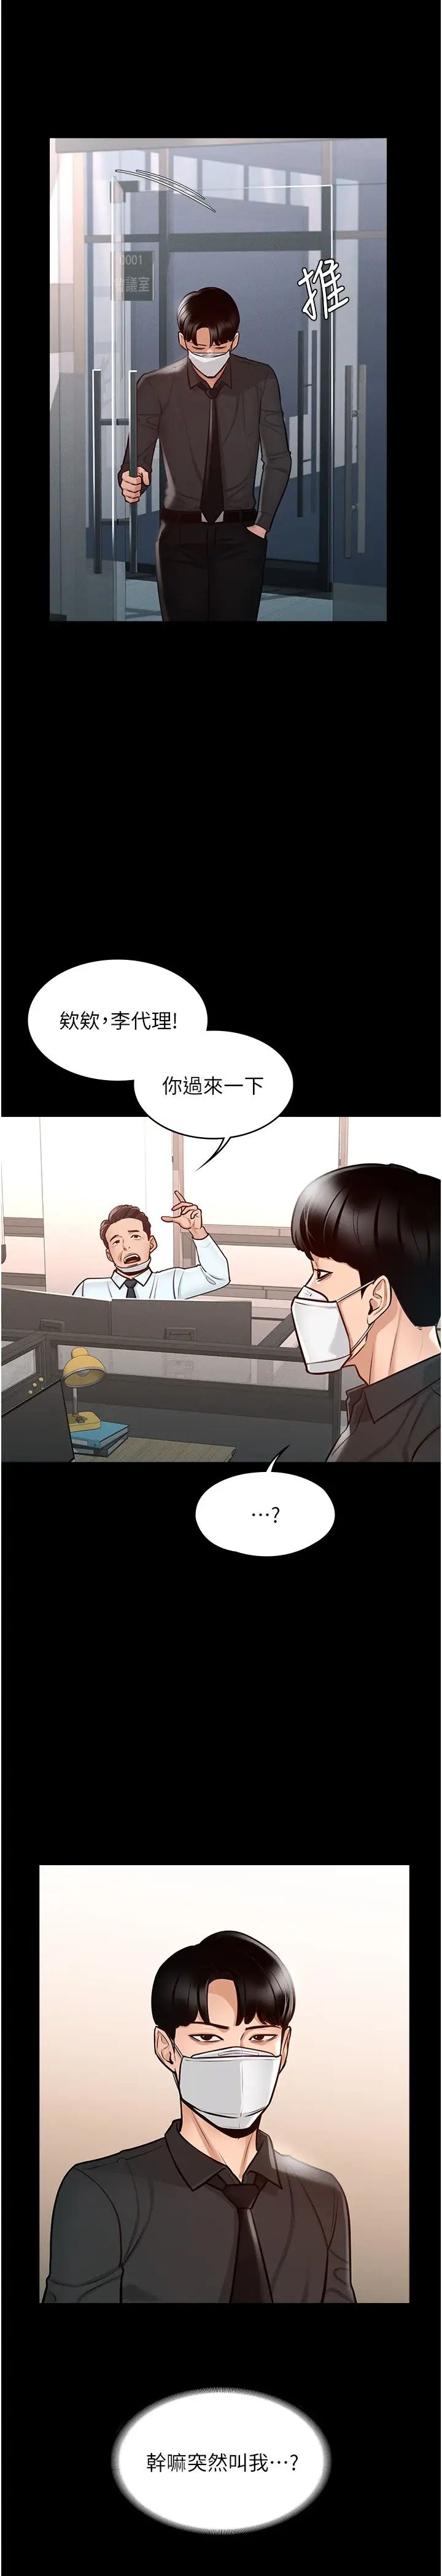 韩国污漫画 超級公務員 第4话 无所不能的「攻」务系统 26